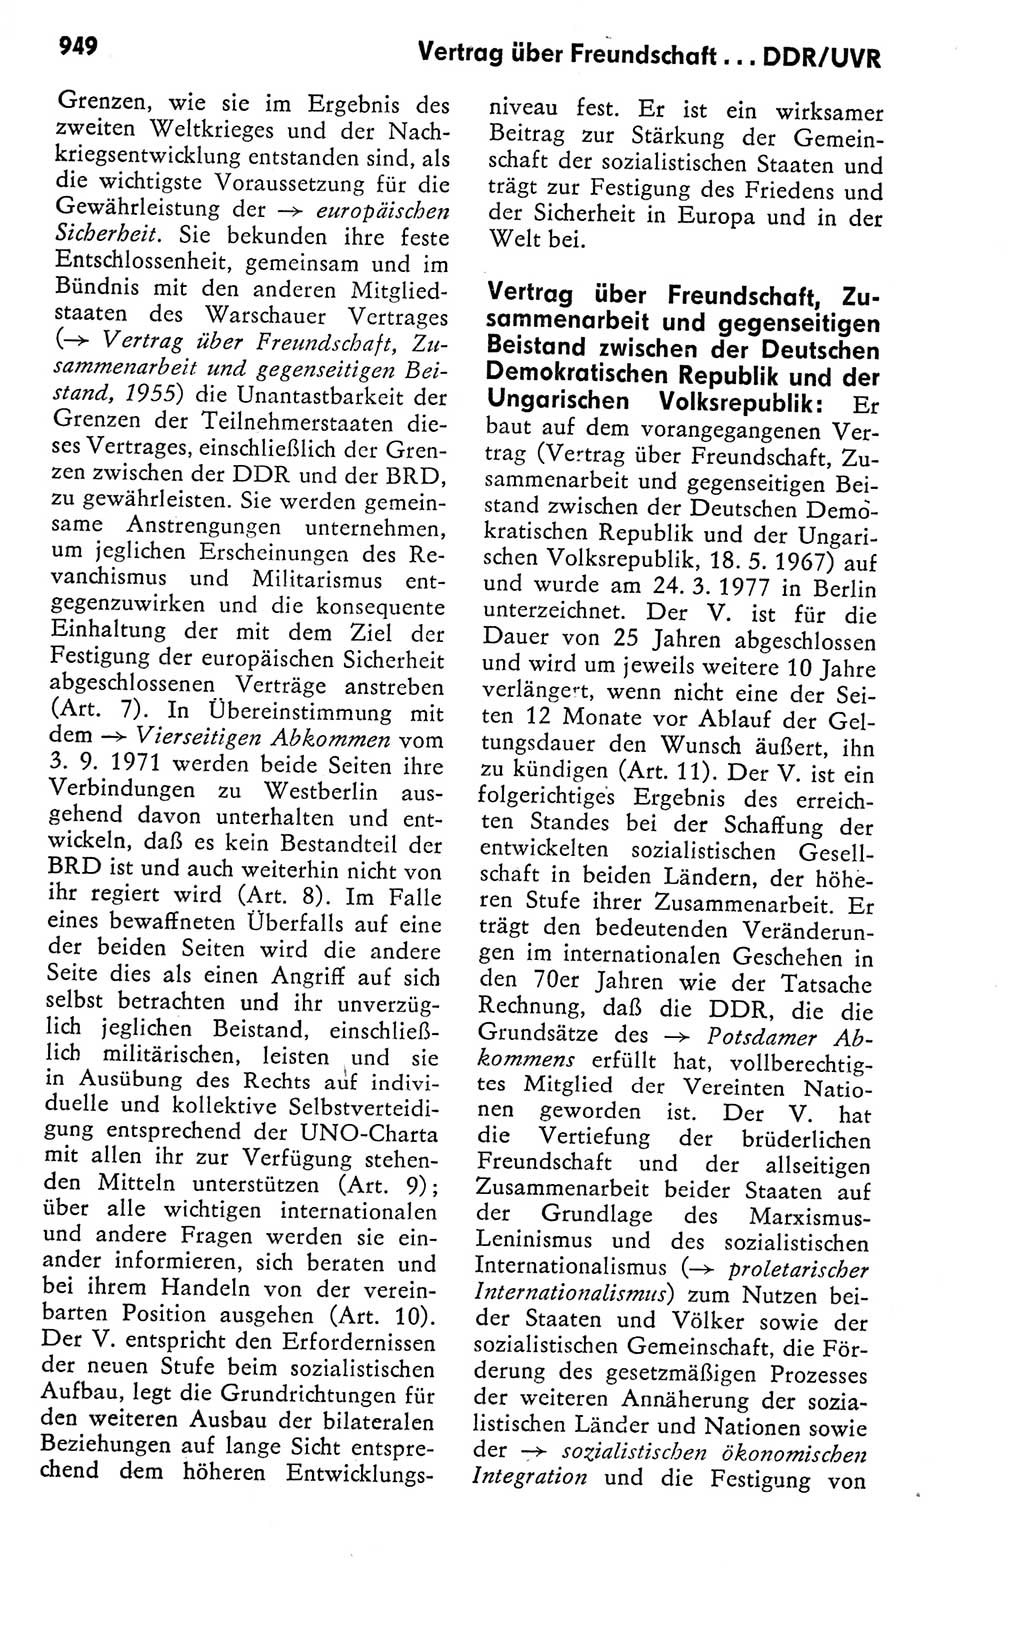 Kleines politisches Wörterbuch [Deutsche Demokratische Republik (DDR)] 1978, Seite 949 (Kl. pol. Wb. DDR 1978, S. 949)